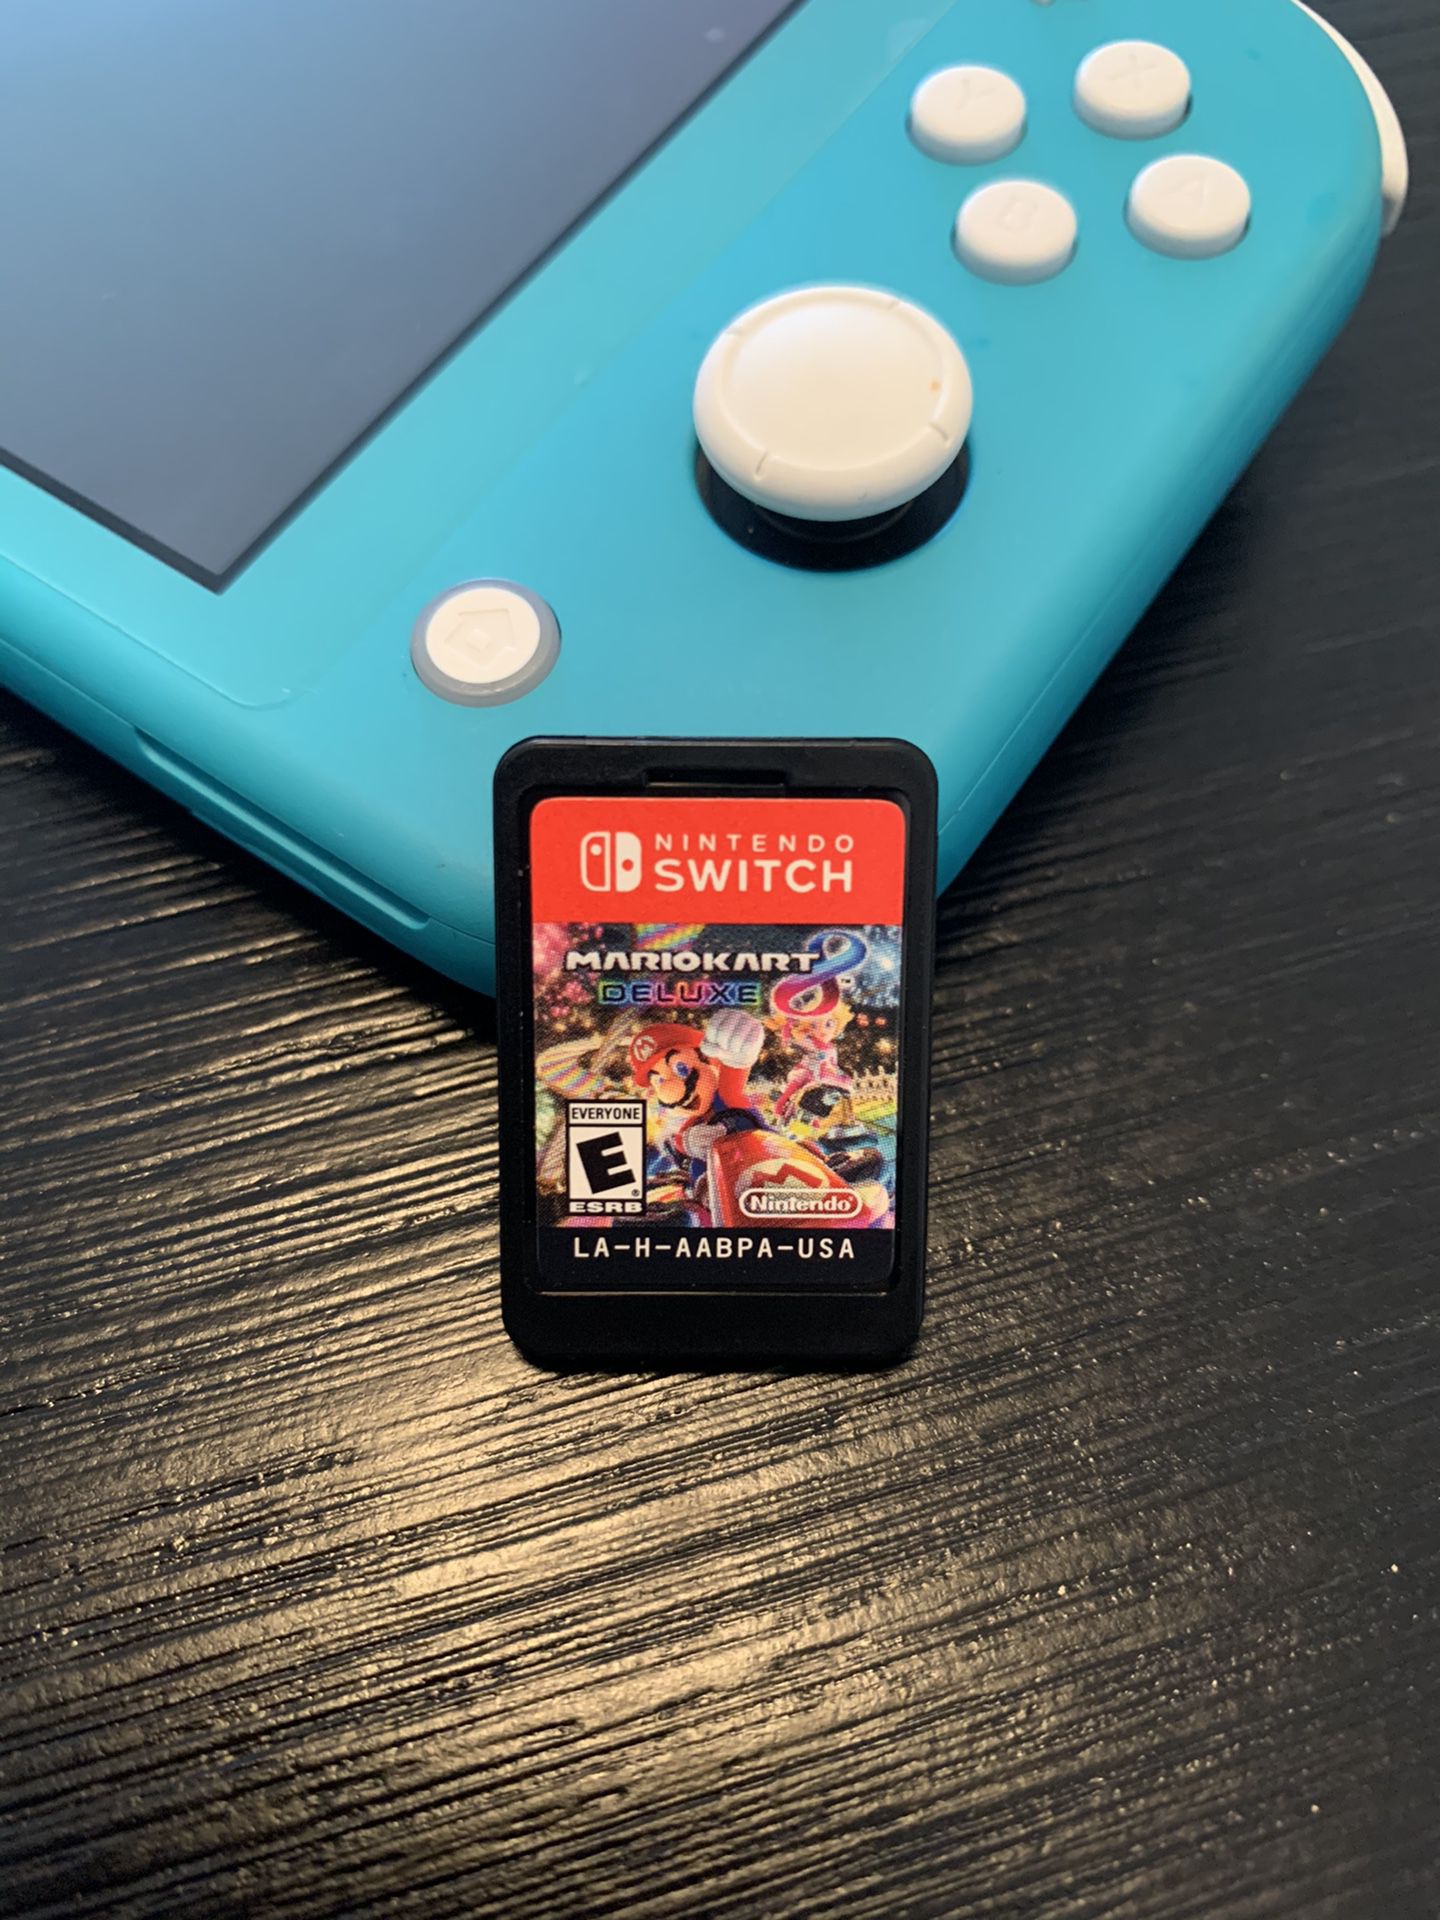 Mario kart deluxe 8 (Nintendo switch)